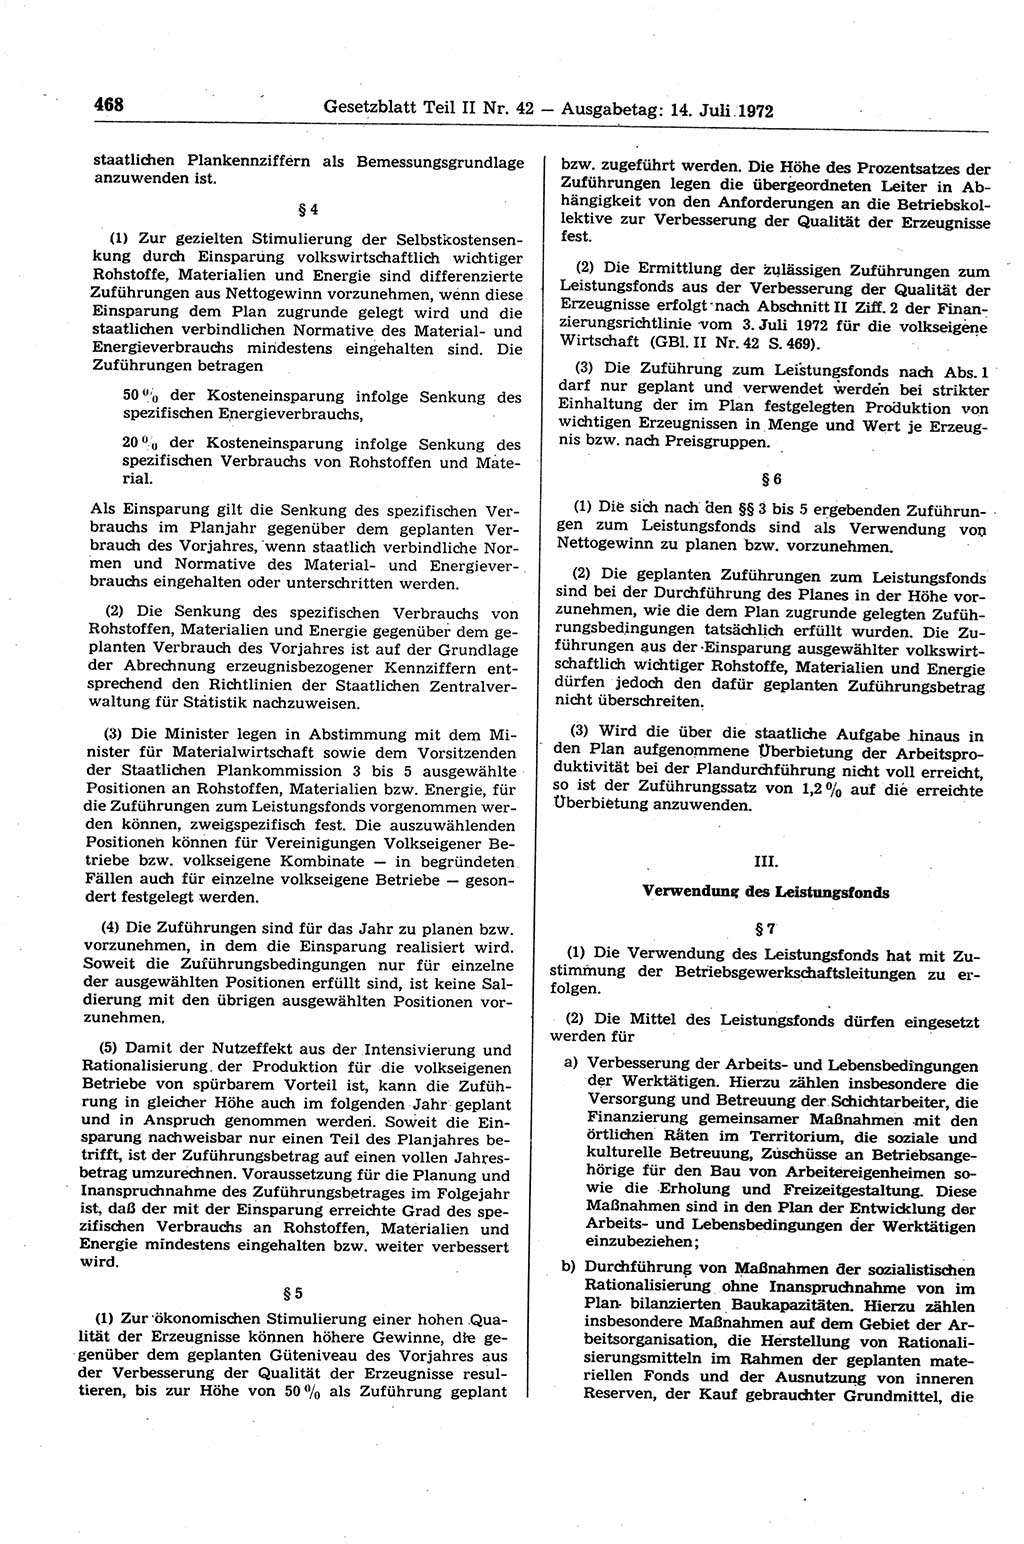 Gesetzblatt (GBl.) der Deutschen Demokratischen Republik (DDR) Teil ⅠⅠ 1972, Seite 468 (GBl. DDR ⅠⅠ 1972, S. 468)